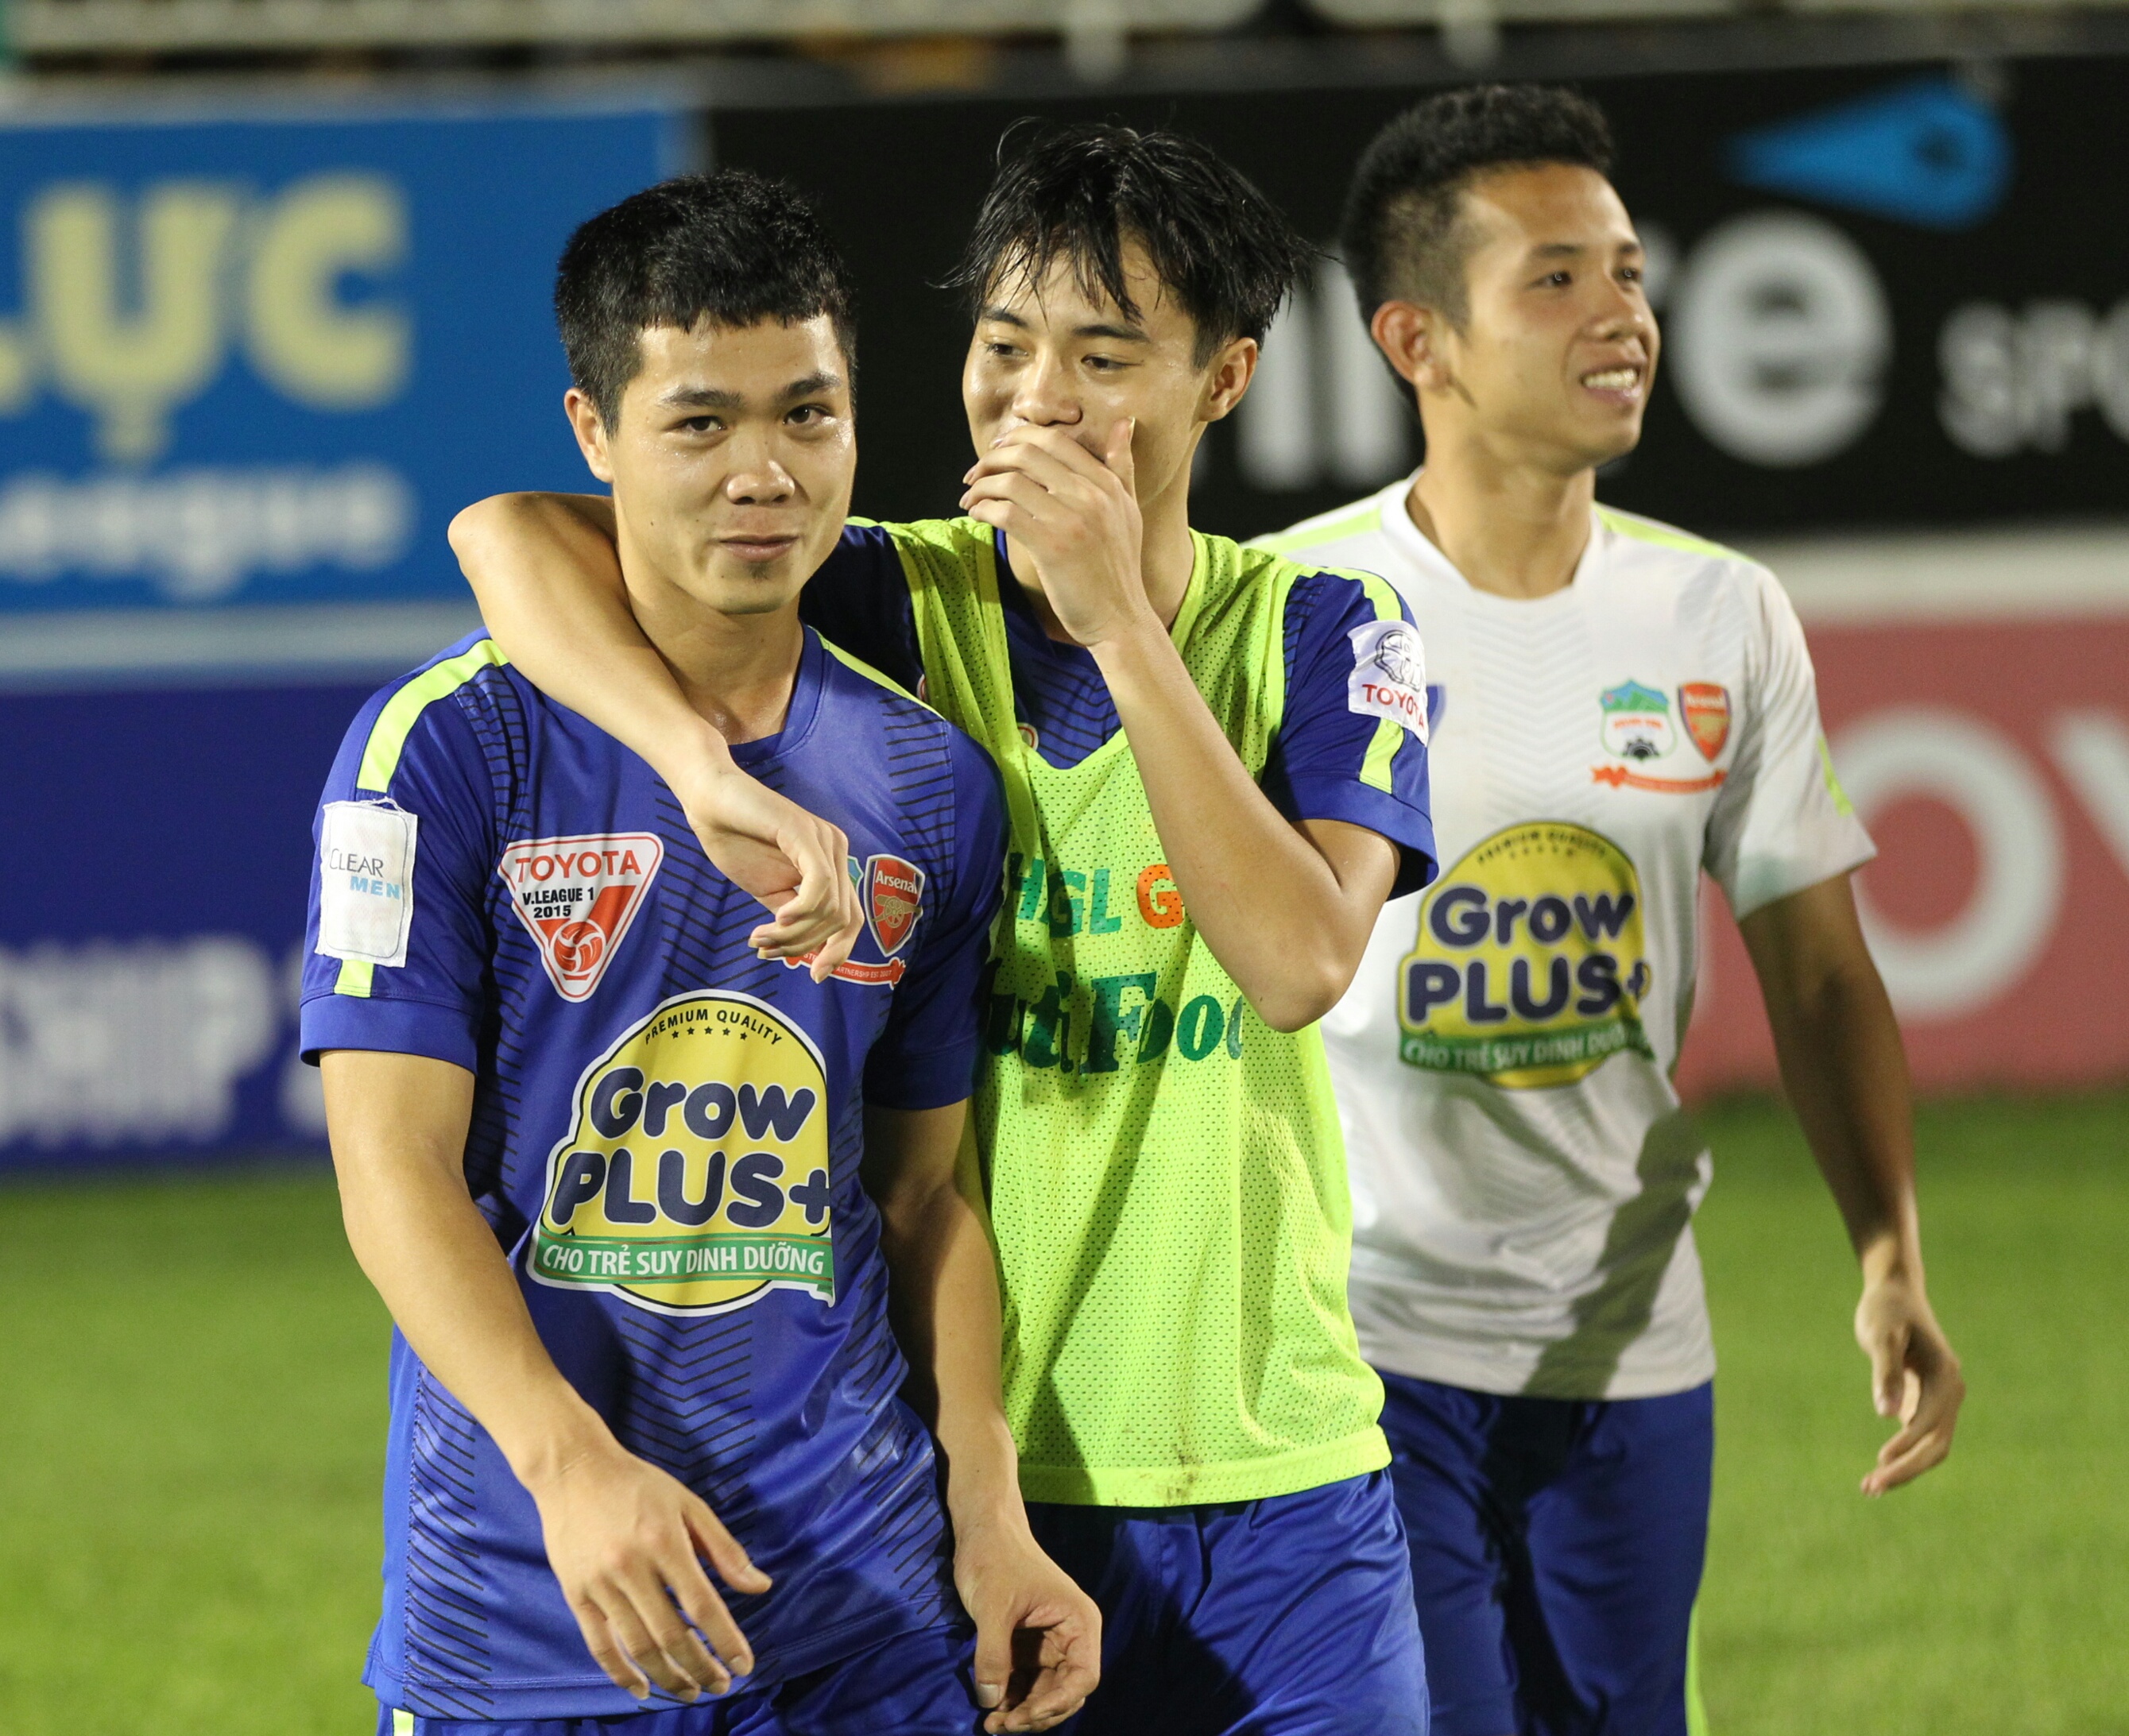 Công Phượng là một trong những tài năng trẻ nổi bật của bóng đá Việt Nam. Với tốc độ và nhịp độ cao, cầu thủ này luôn khiến người hâm mộ mê mẩn và hào hứng trước mỗi trận đấu. Hình ảnh của Công Phượng sẽ làm say mê bất kỳ ai yêu thích bóng đá và những kỹ năng đẳng cấp.